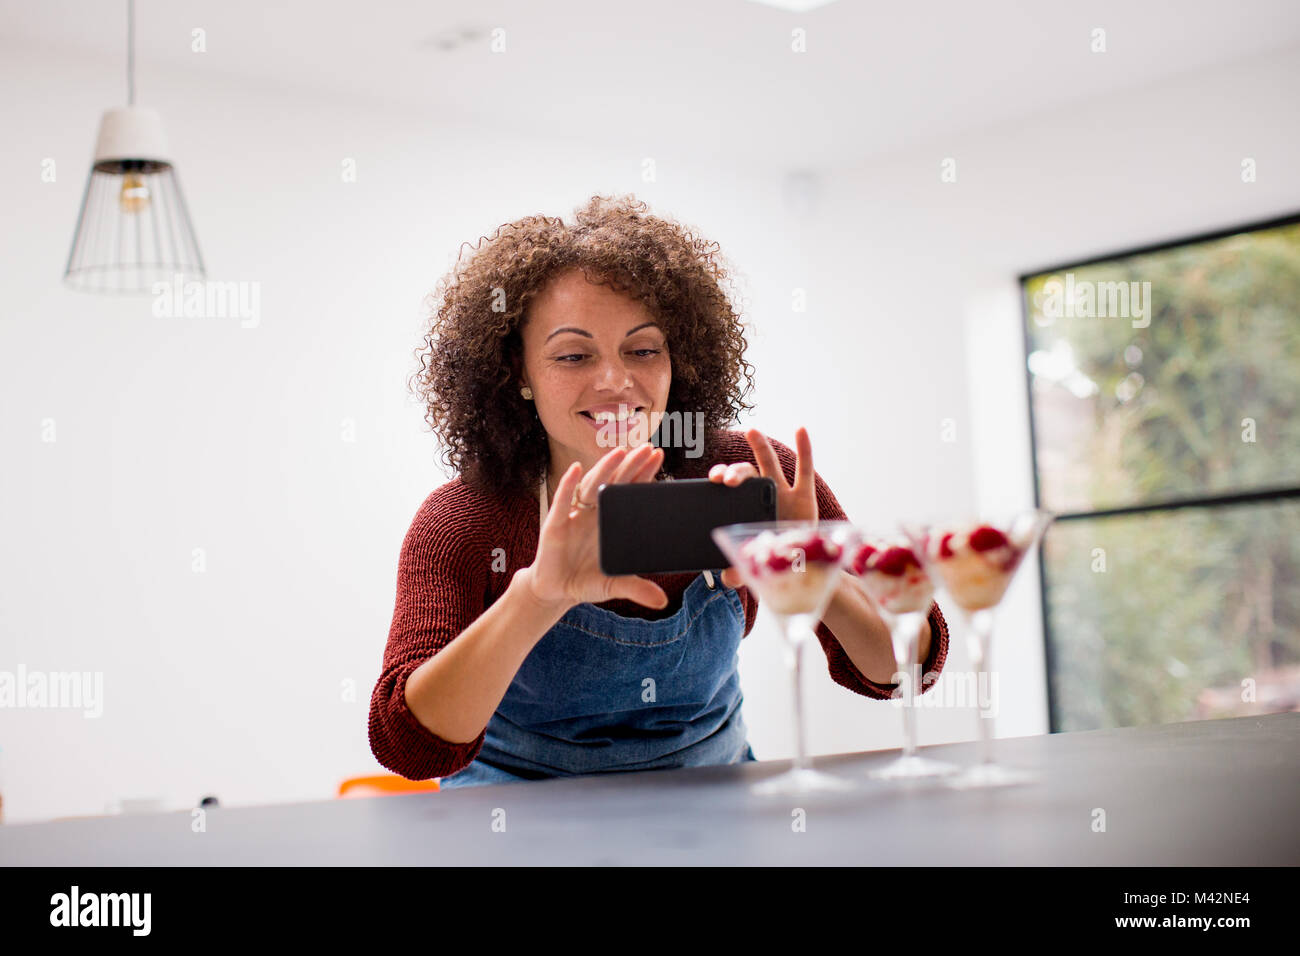 L'alimentation femelle blogger prend une photo avec le smartphone Banque D'Images